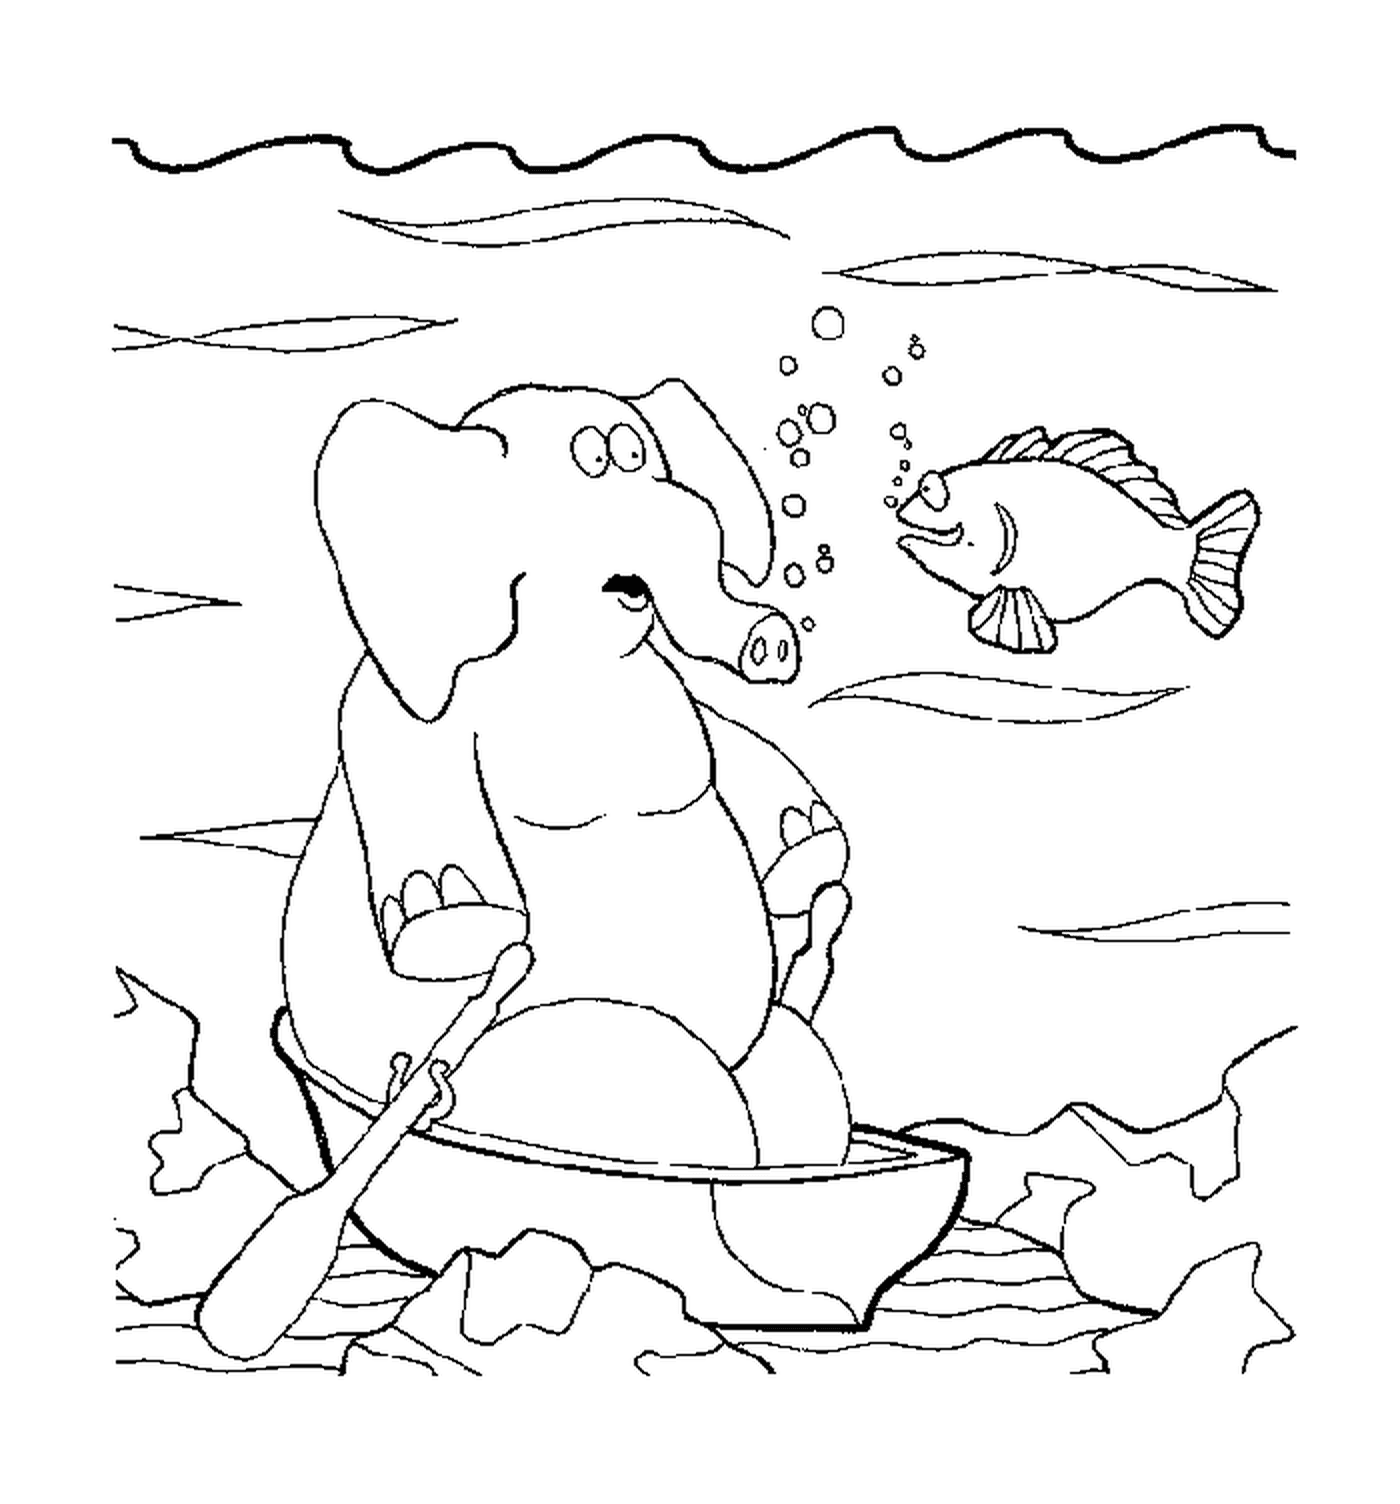  Слон под водой 